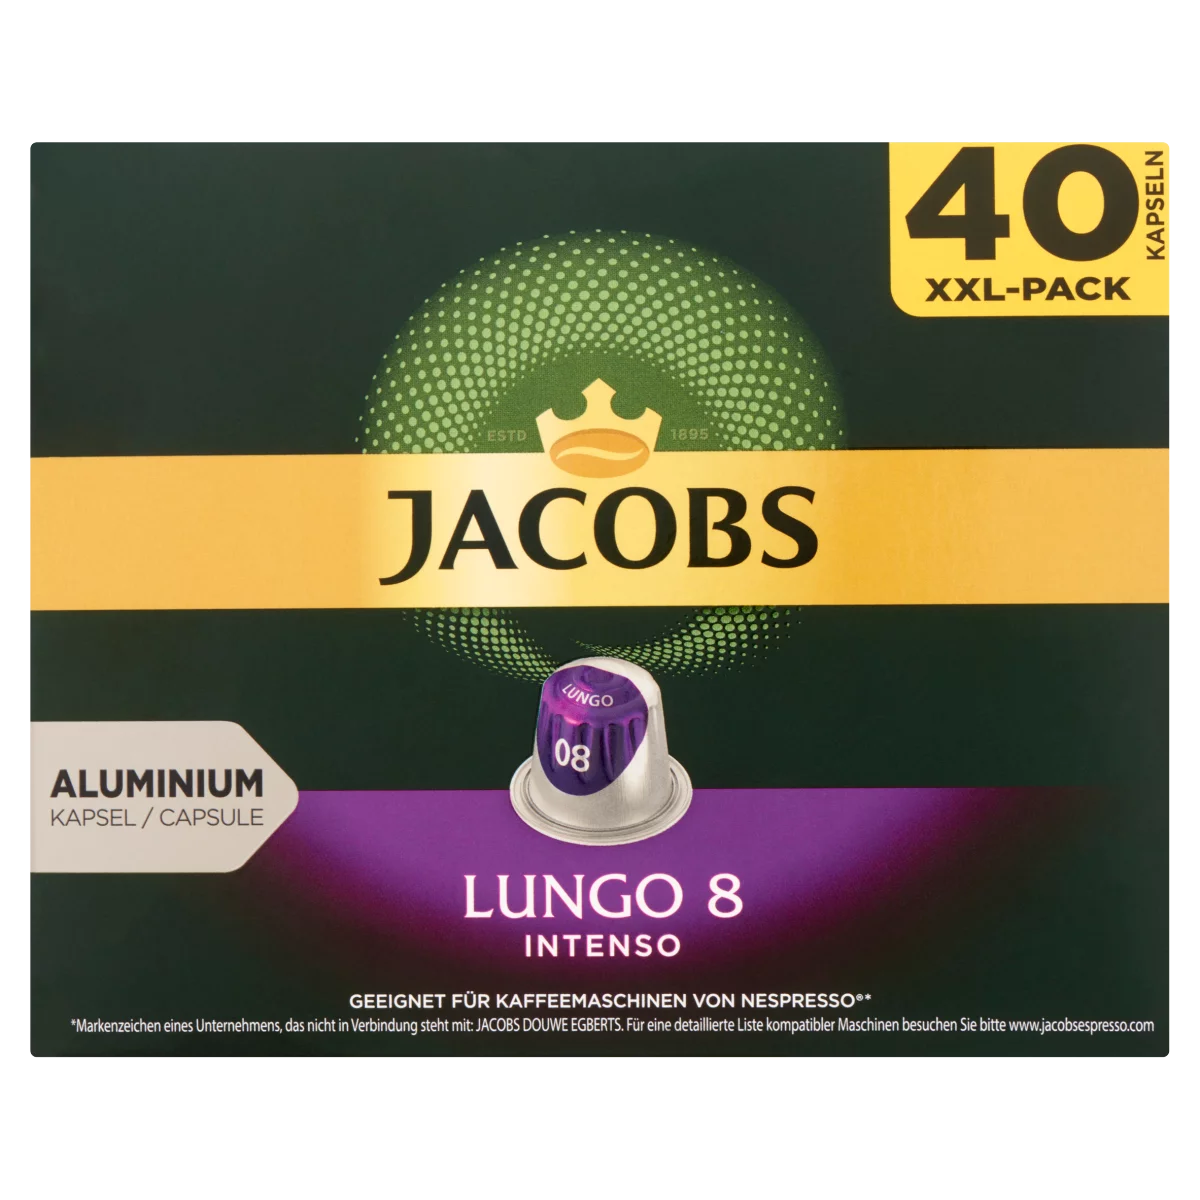 Jacobs Lungo 8 Intenso őrölt-pörkölt kávé kapszulában 40 db 208 g